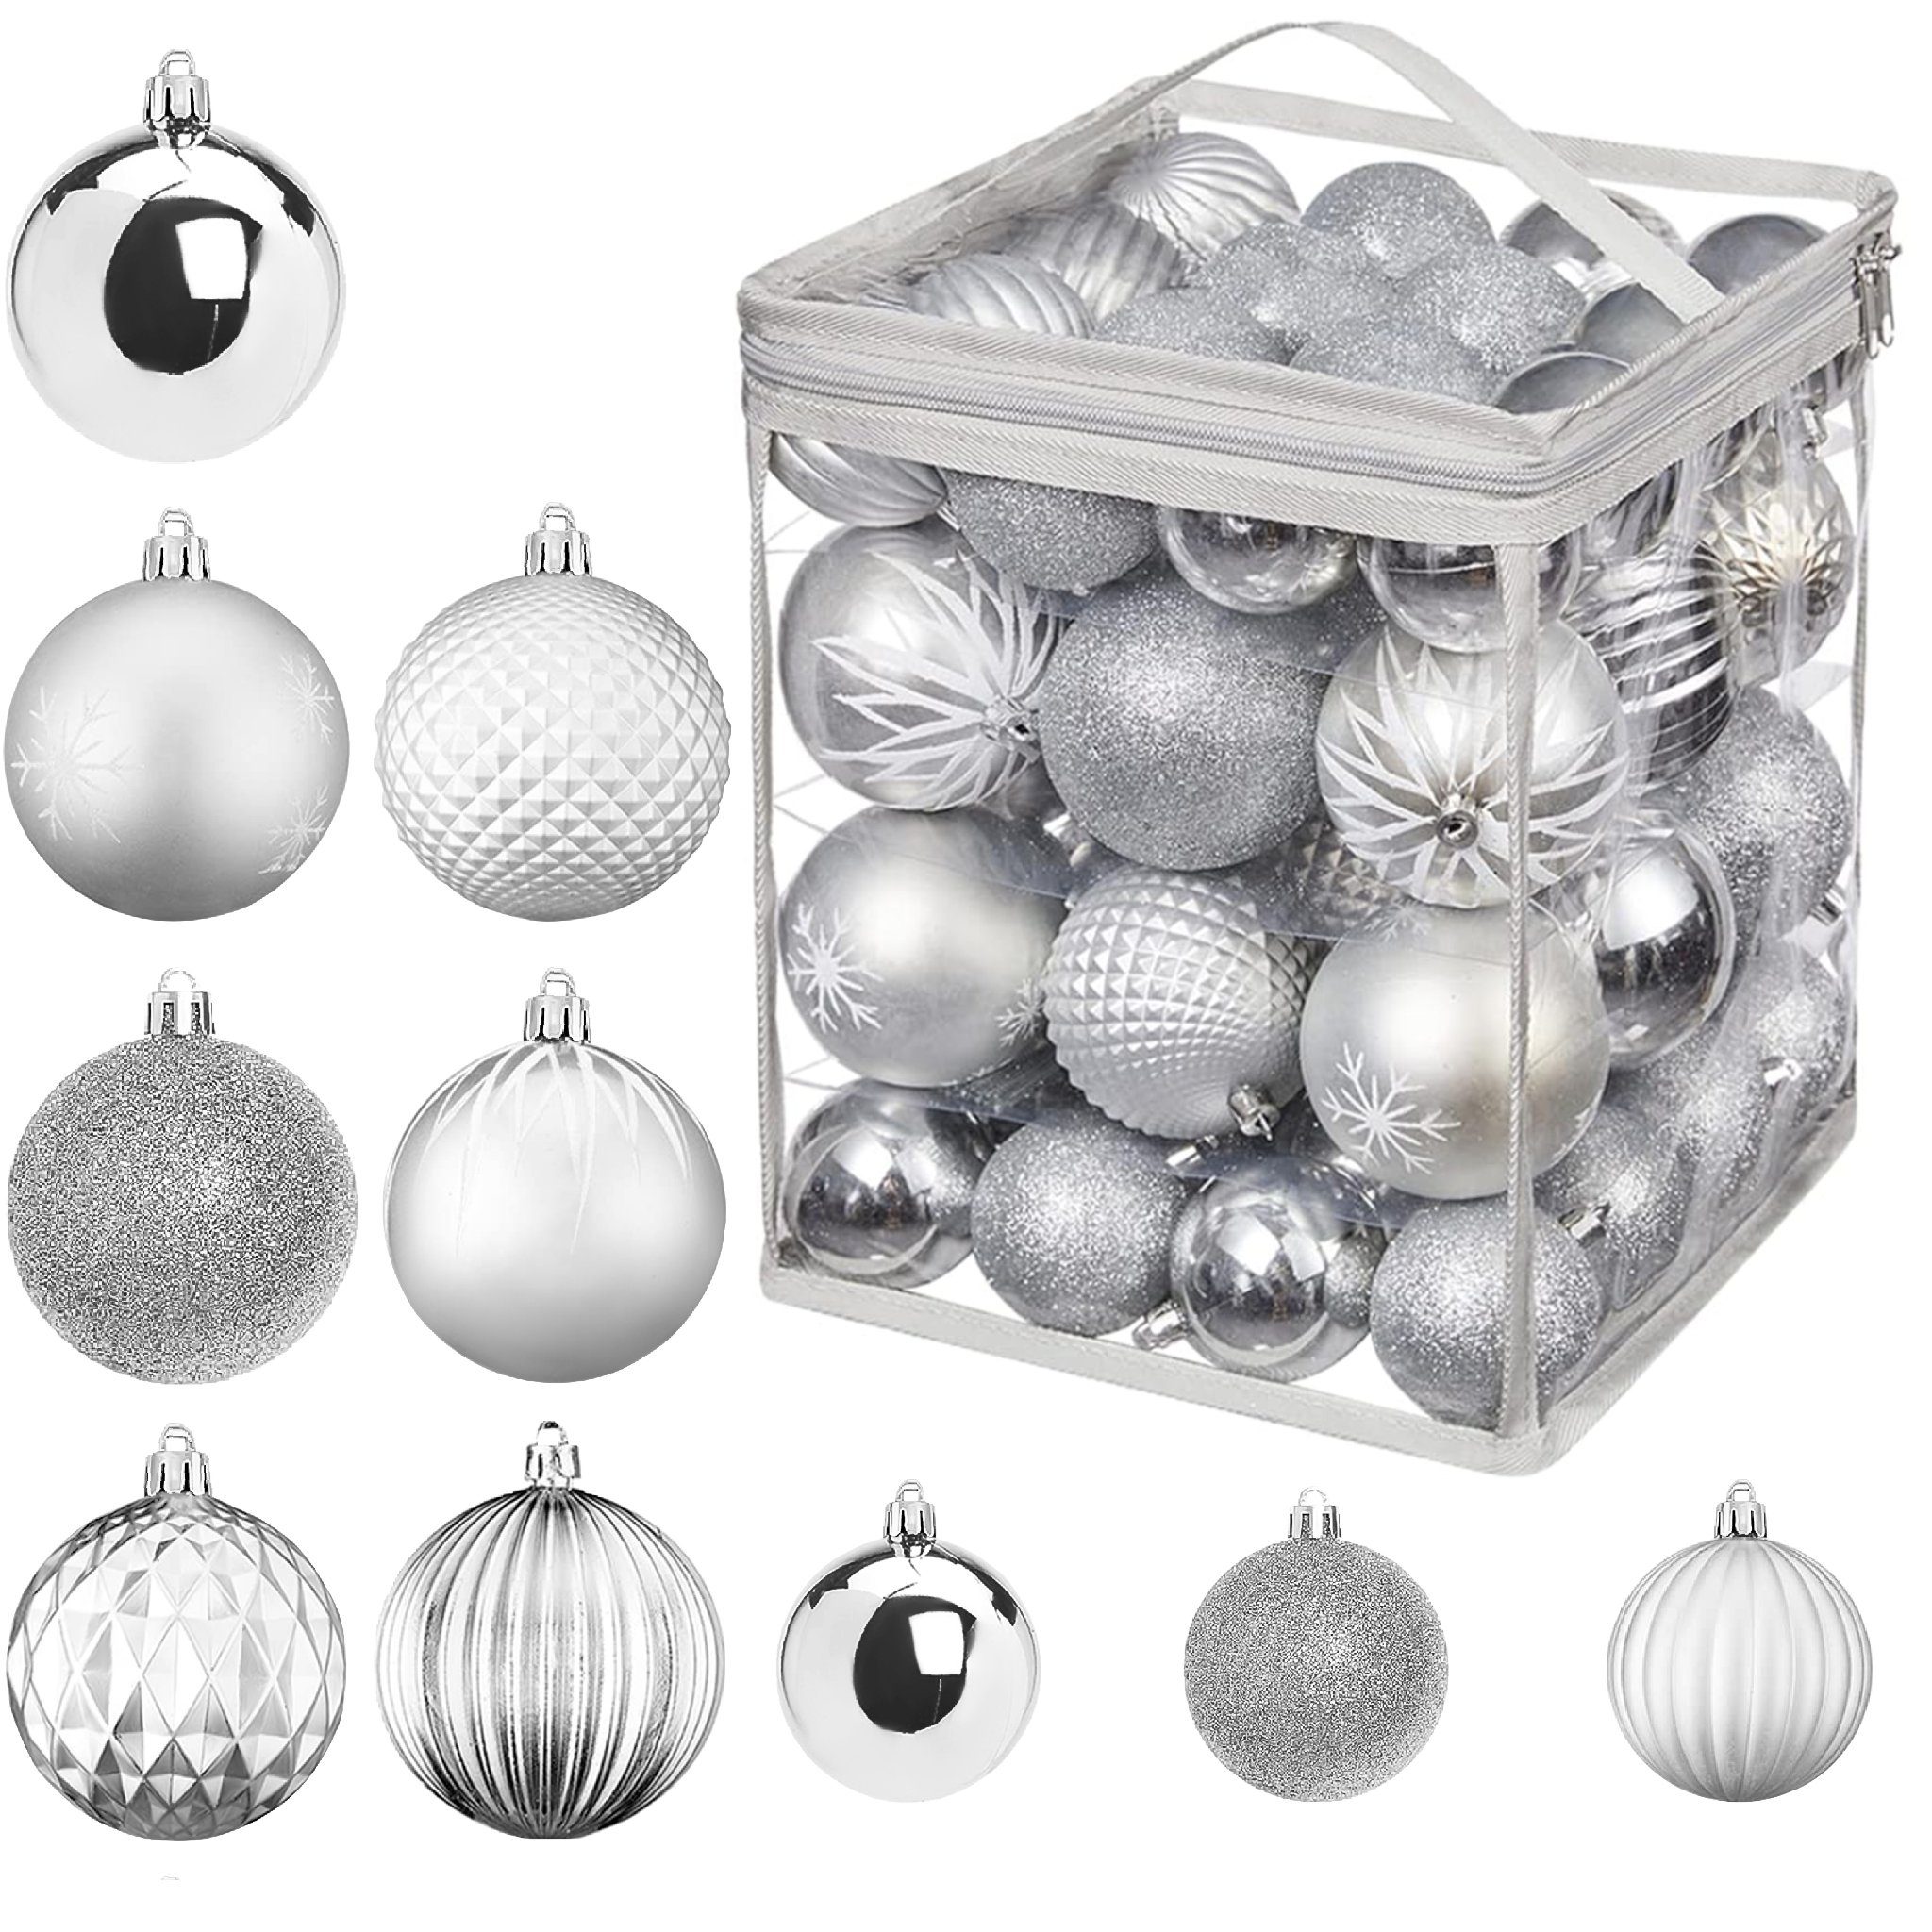 UISEBRT Weihnachtsbaumkugel 50tlg. Weihnachtskugeln Kunststoff Christbaumkugeln Set Silber